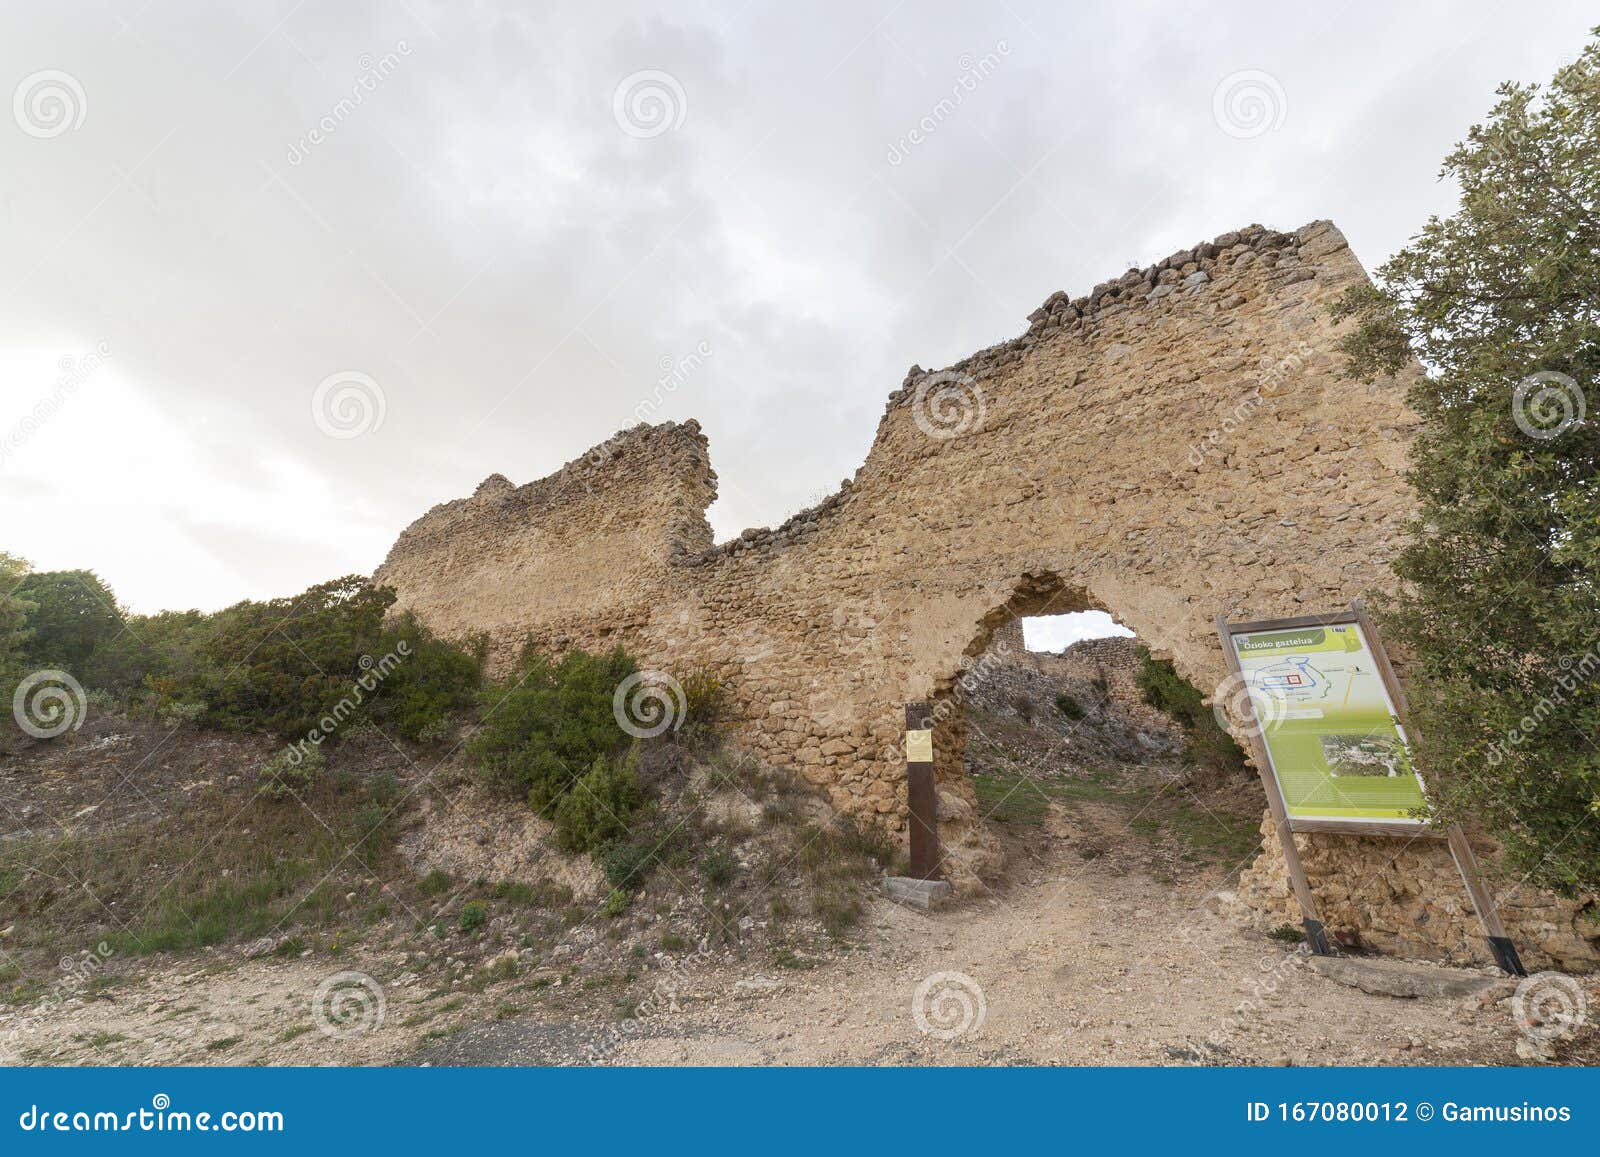 ocio castle, on de lanos mountain, ruins of a medieval castle